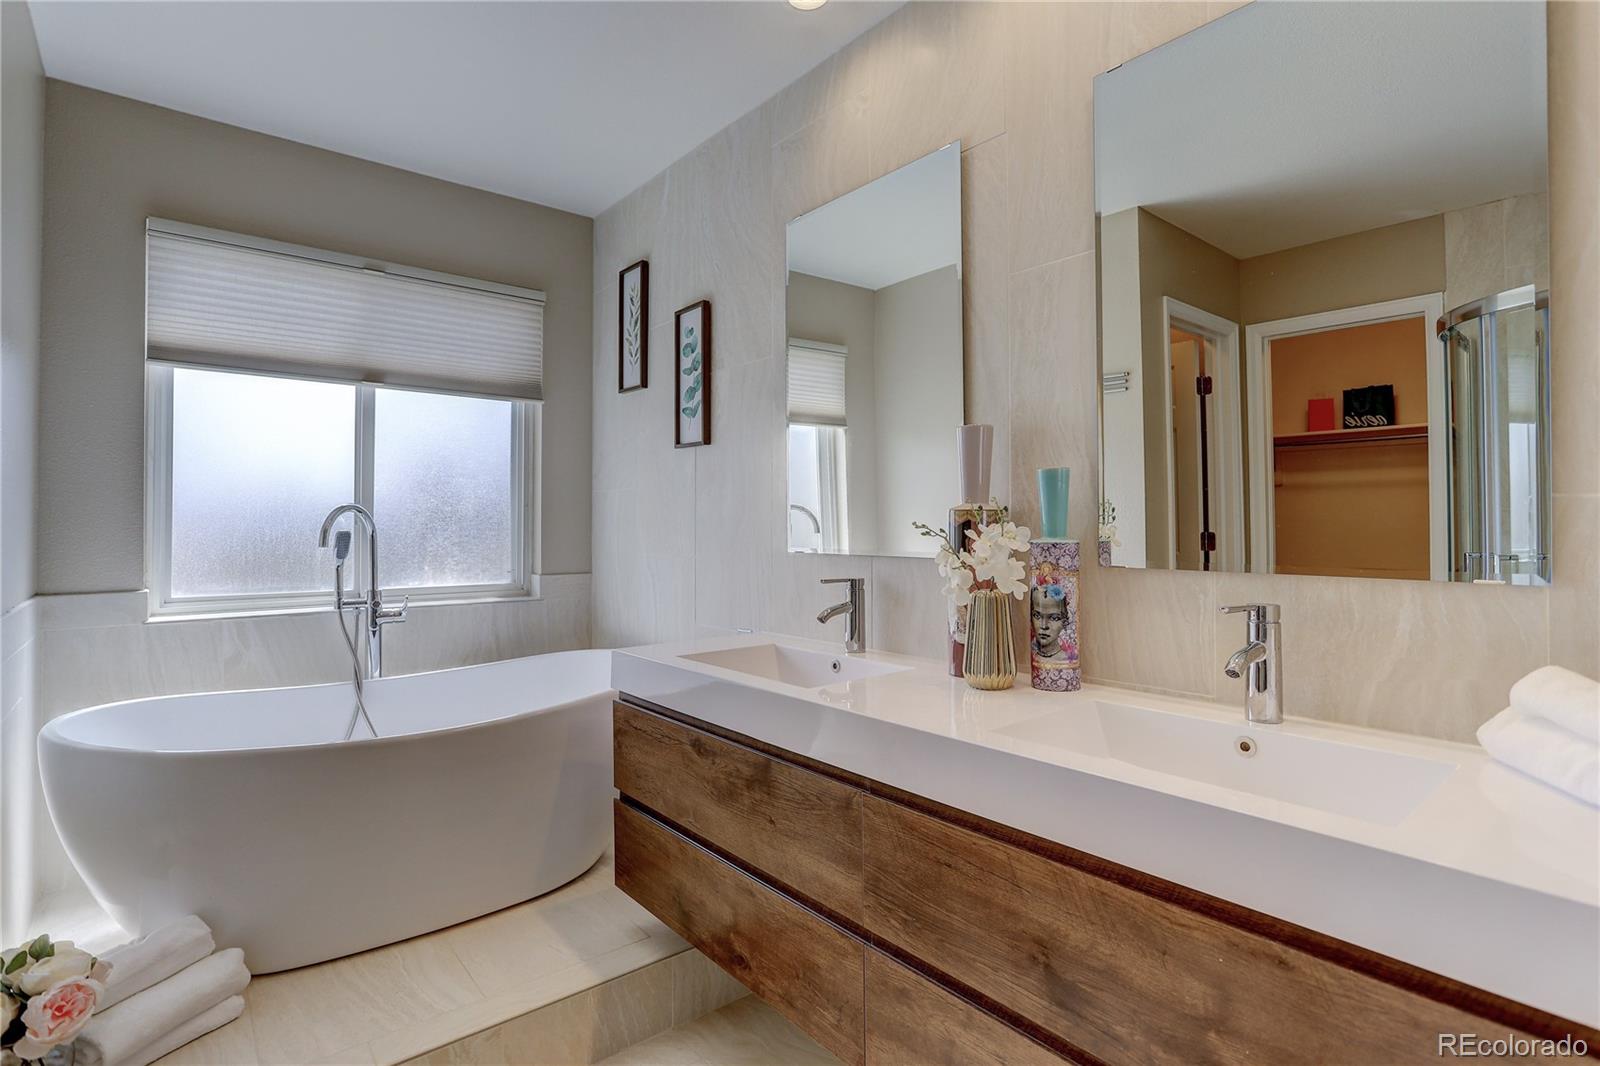 a bathroom with sink bathtub and mirror